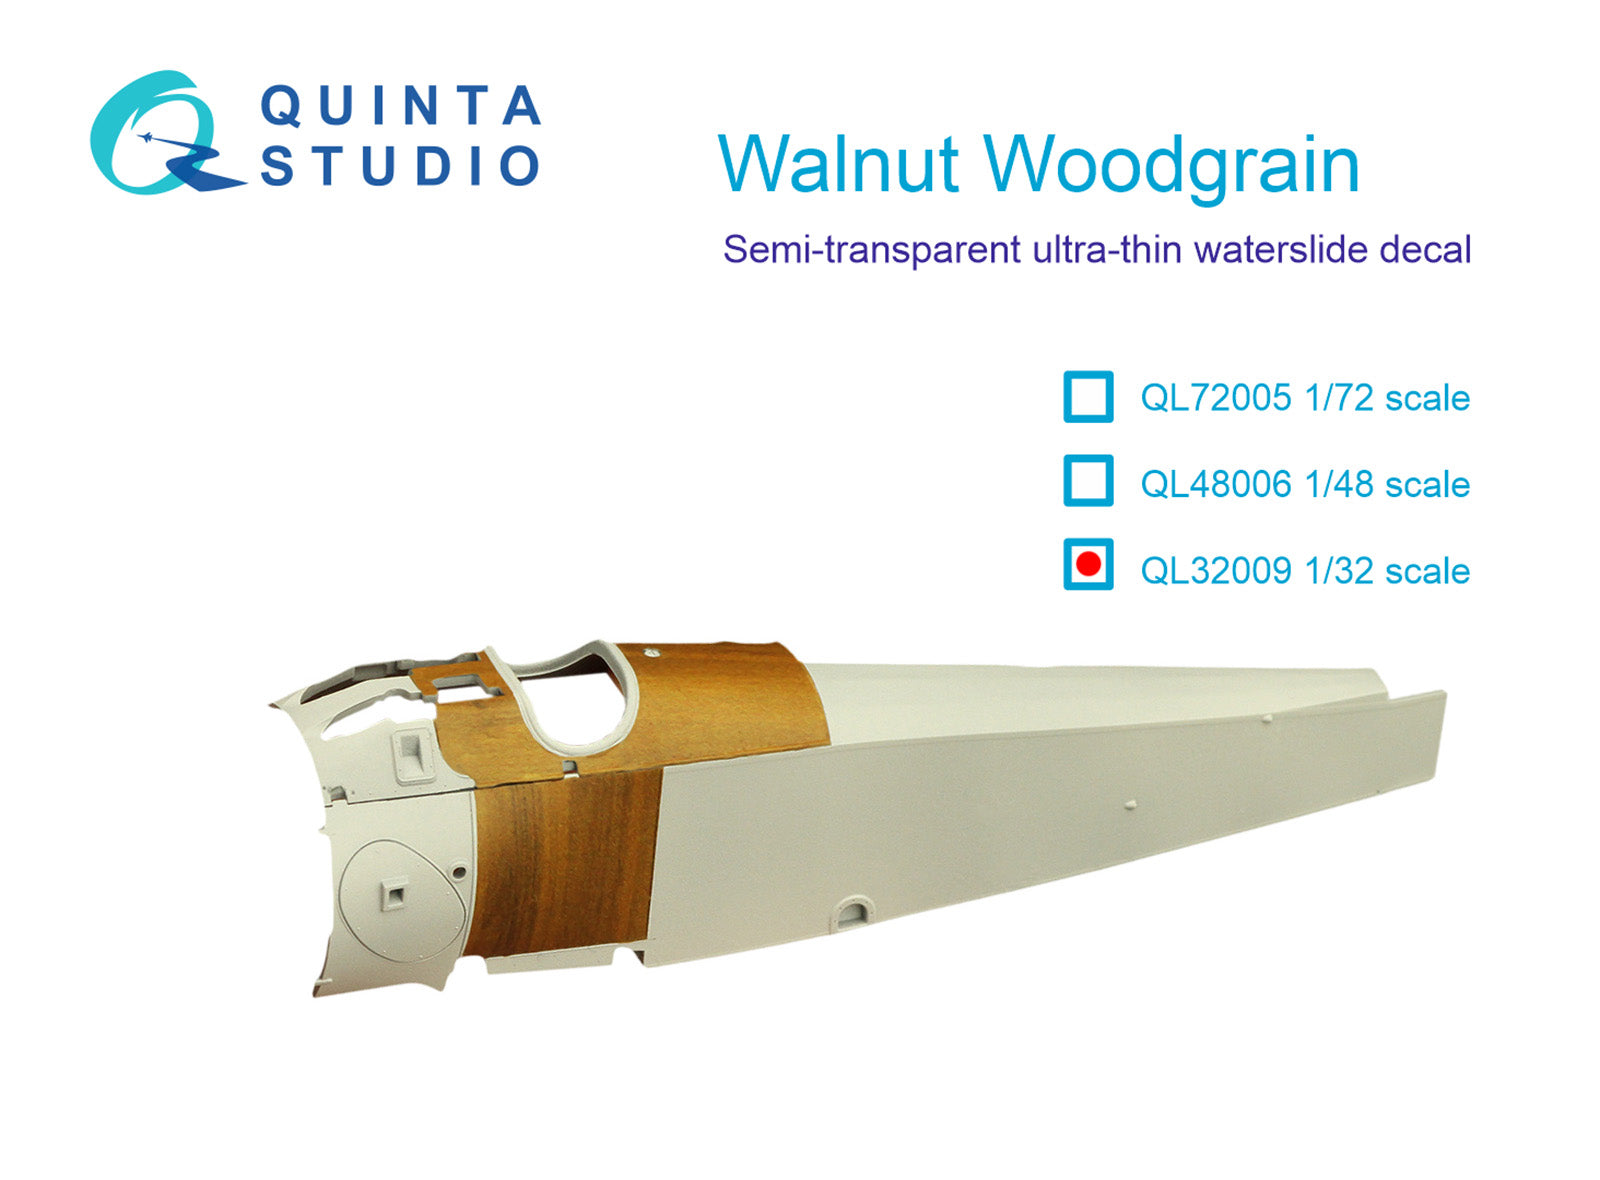 Quinta Studio - 1/32 Walnut Woodgrain QL32009 for all Kits